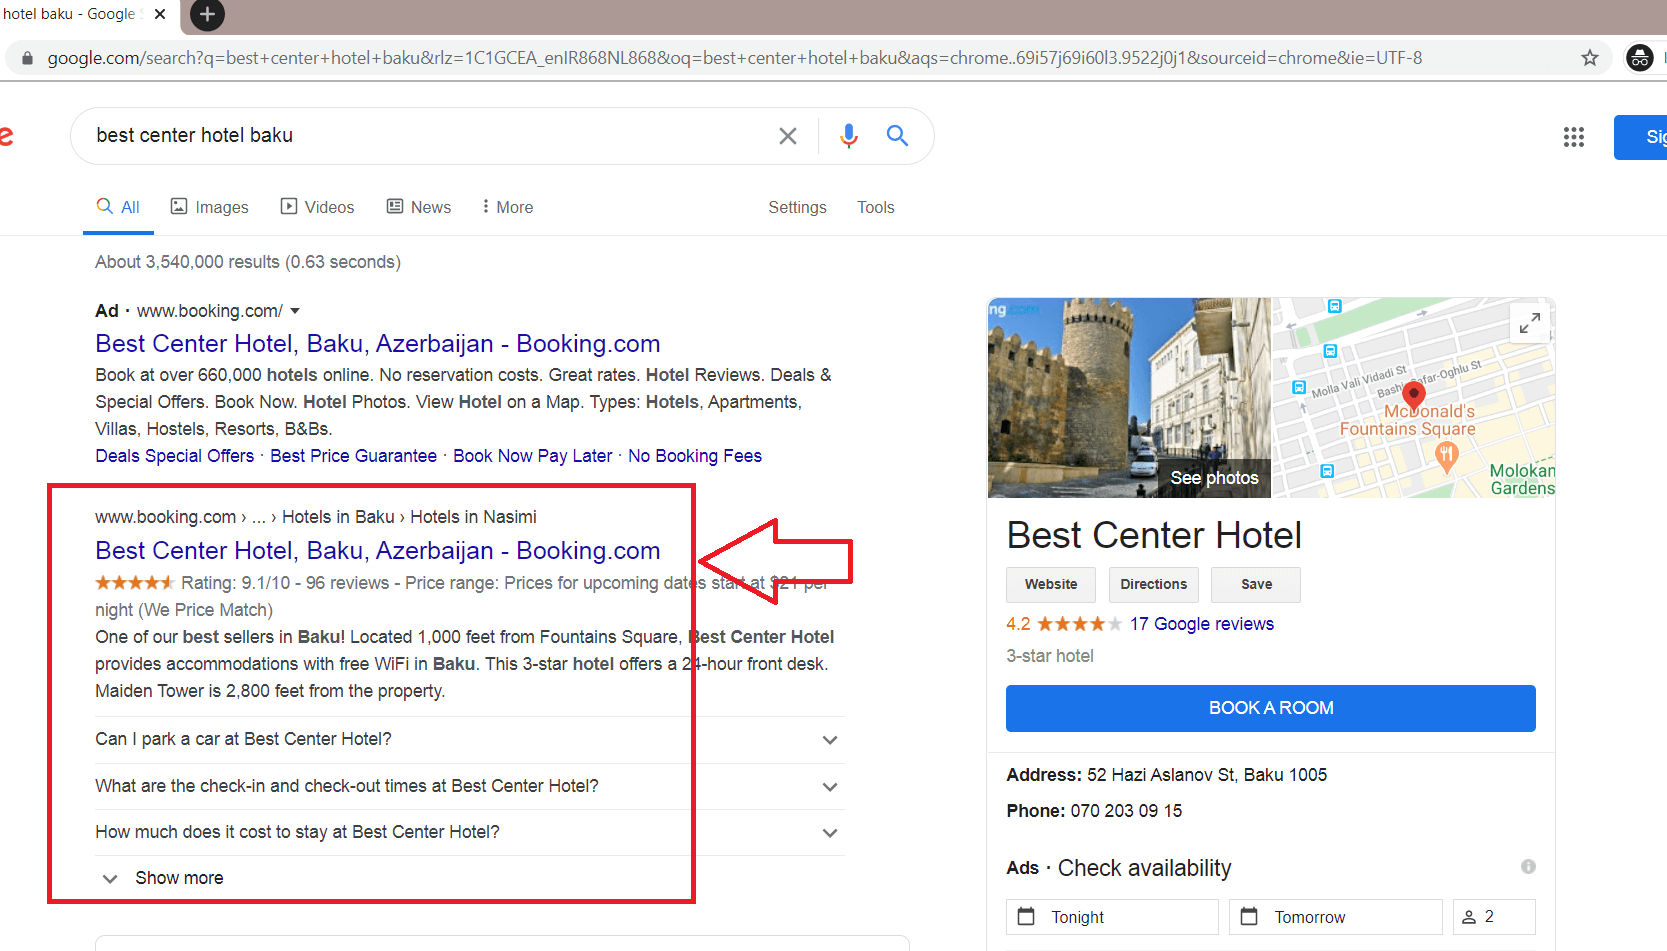 جستجوی هتل بست سنتر باکو در گوگل